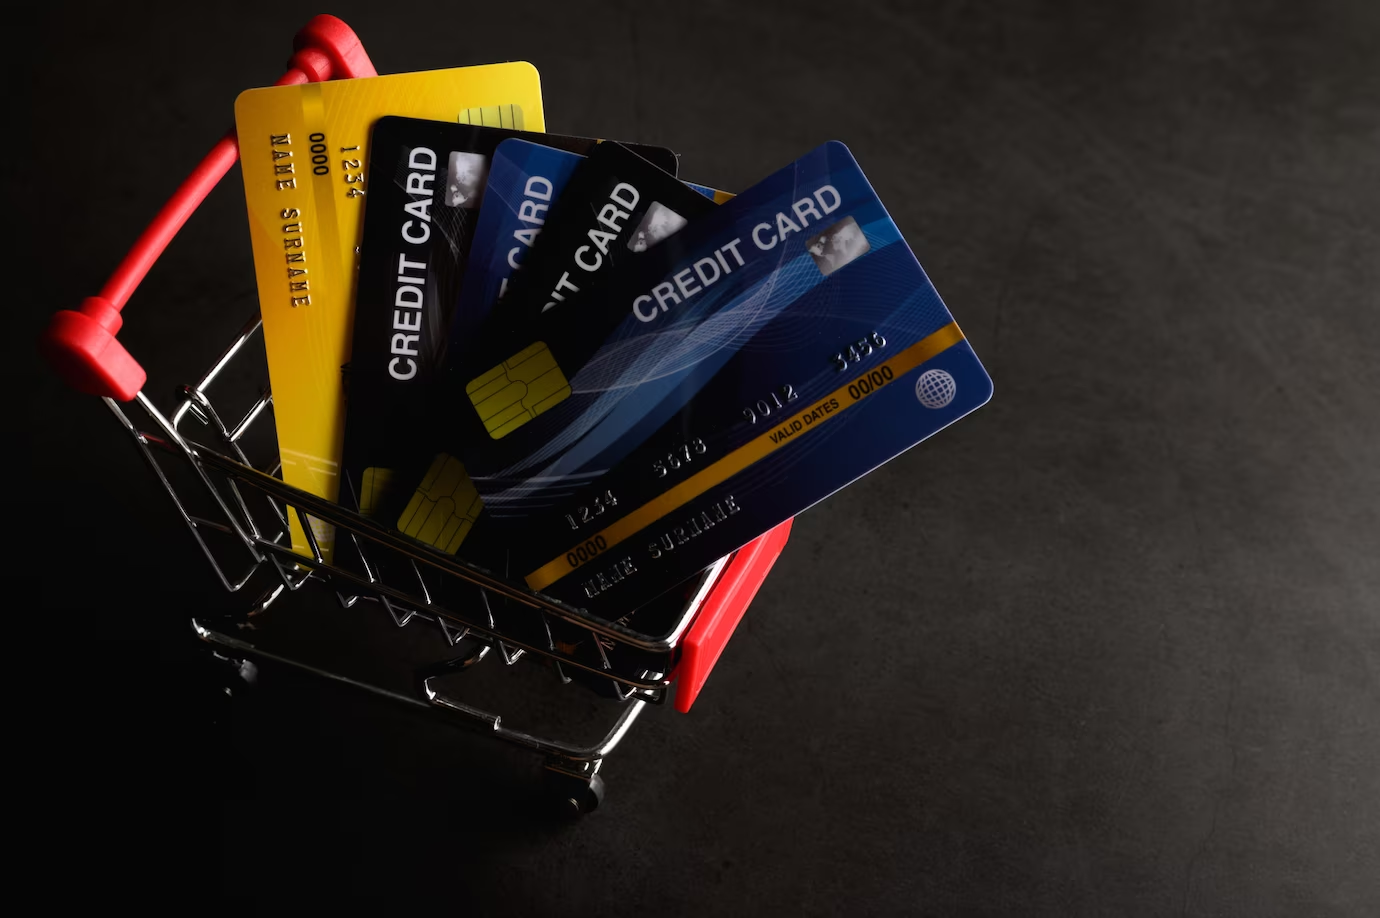 VIB đang phát hành 2 loại là thẻ thanh toán và thẻ tín dụng